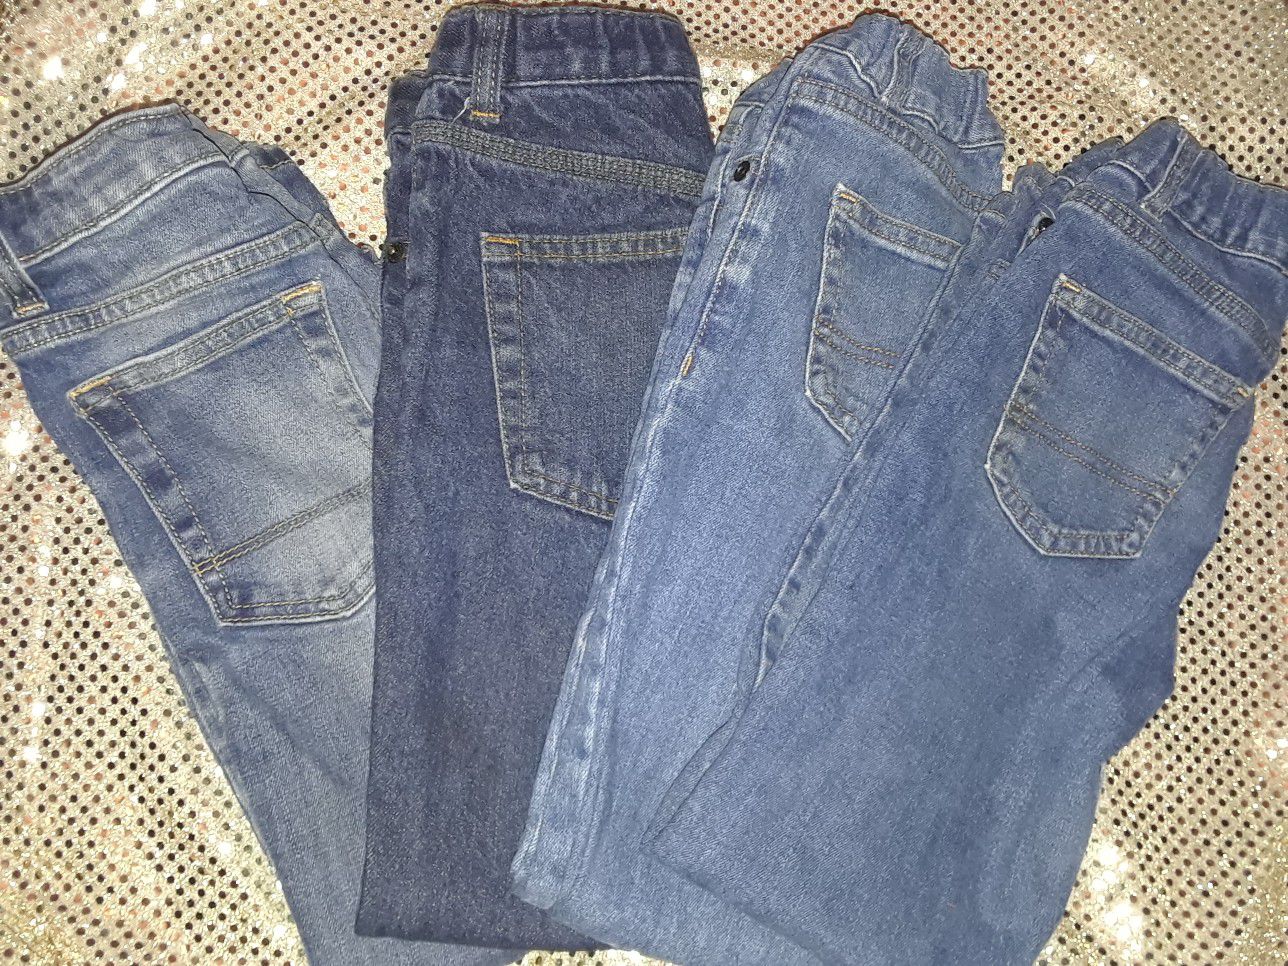 Cat & Jack / Wonder Nation Jeans (size 7 boys)